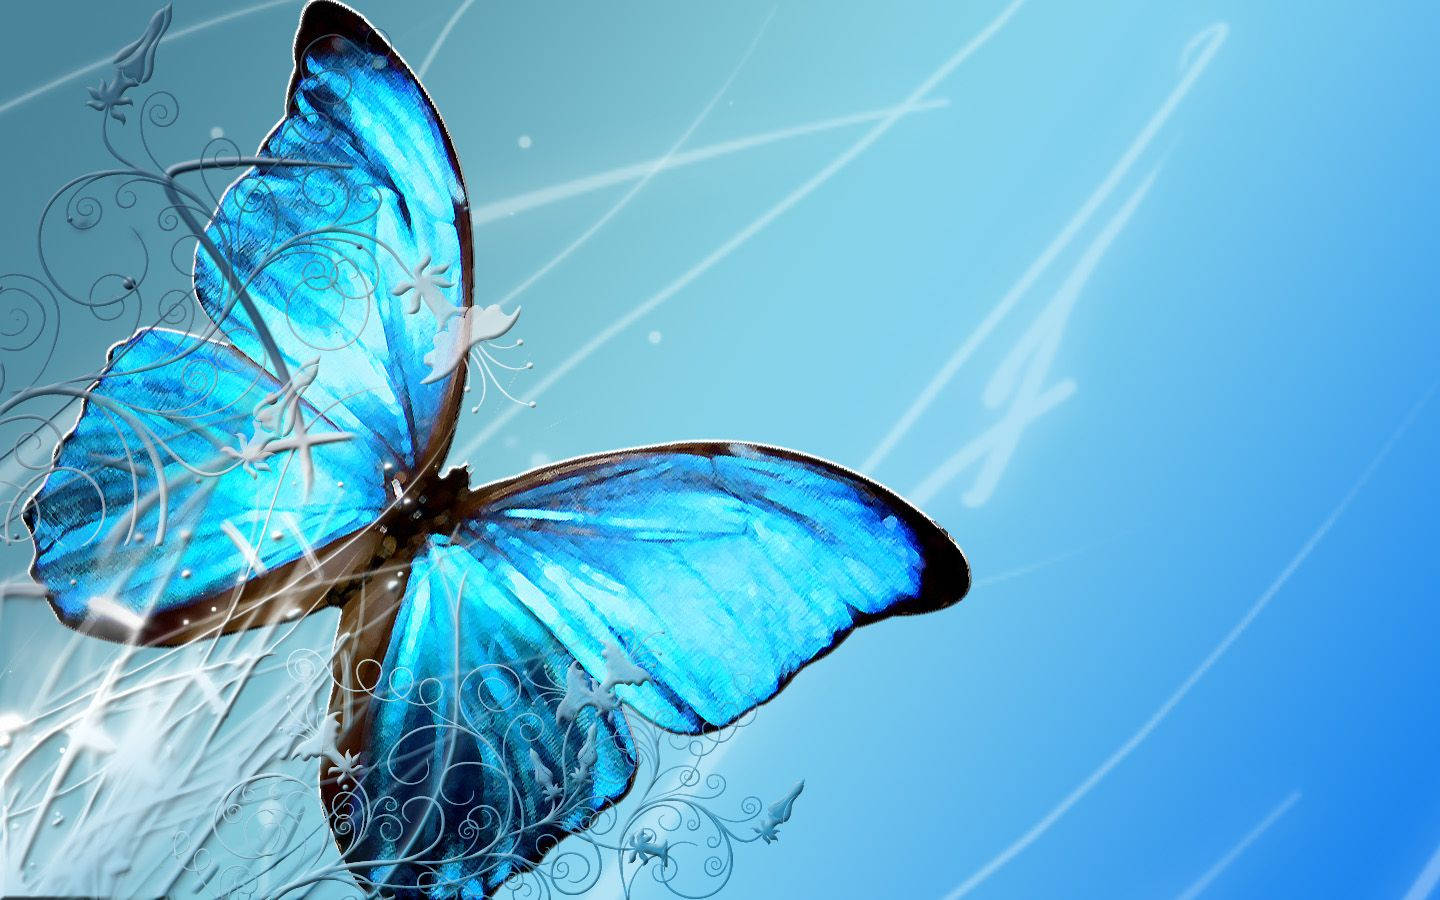 A Blue Butterfly Taking Flight